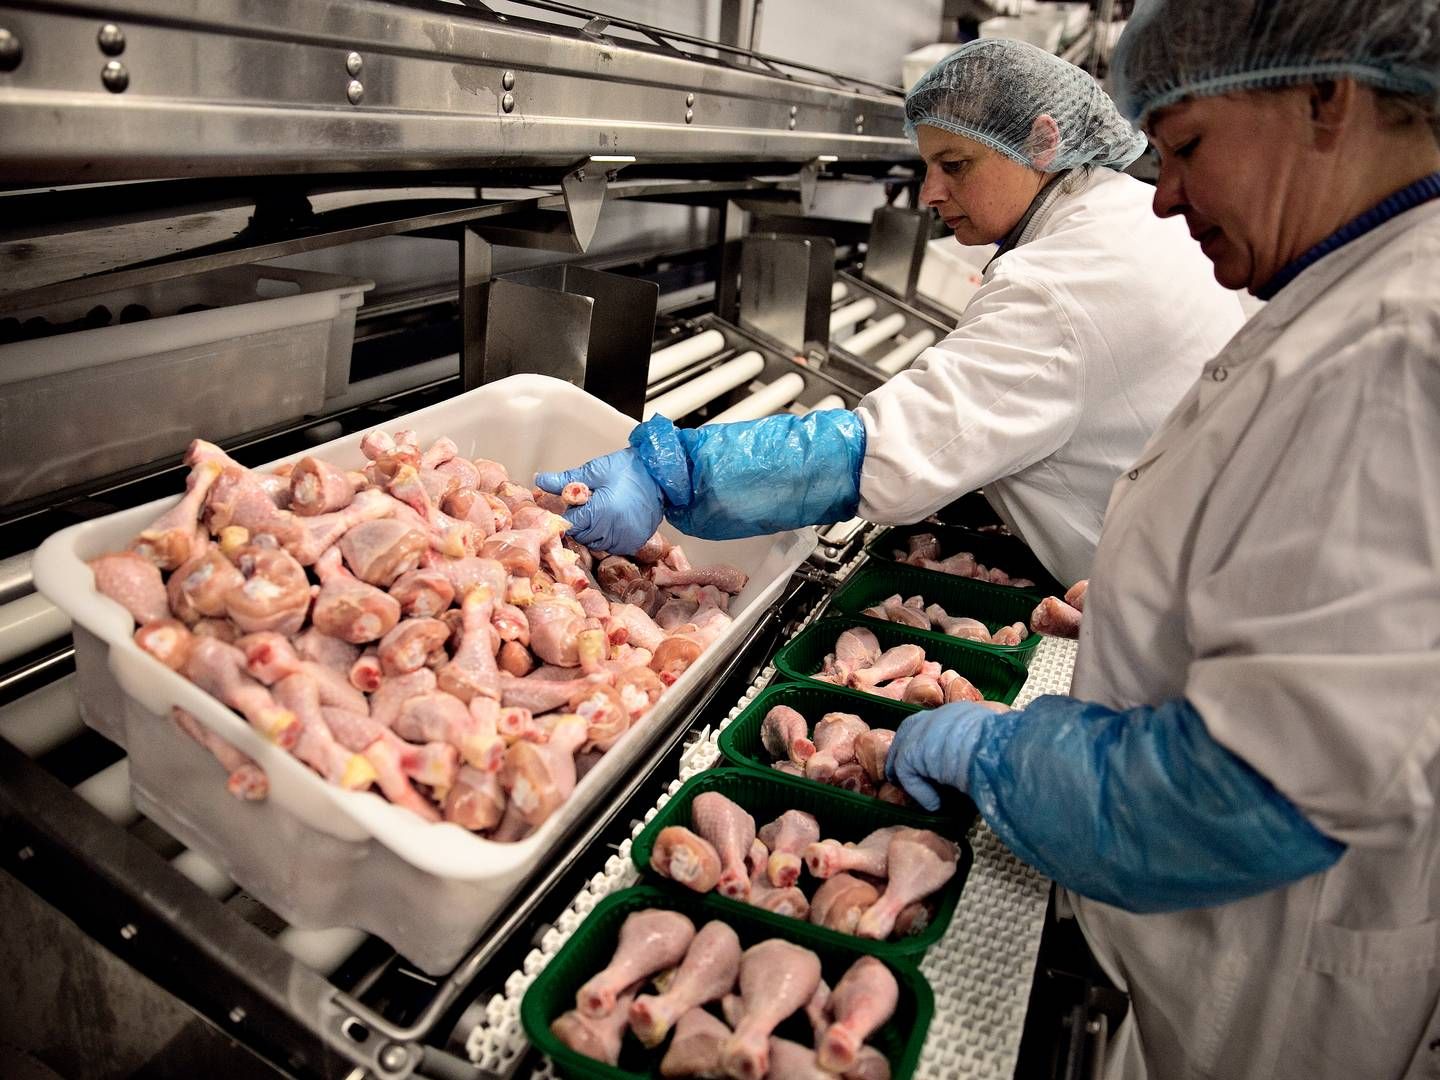 Kyllingeproducenten Danpo har svært ved at få afsat hele kyllingen og må forsøge at sælge den i udlandet. "Og der er efterspørgslen efter langsomvoksende ikke til stede,” fortæller adm. direktør Kasper Lenbroch. | Foto: Joachim Adrian